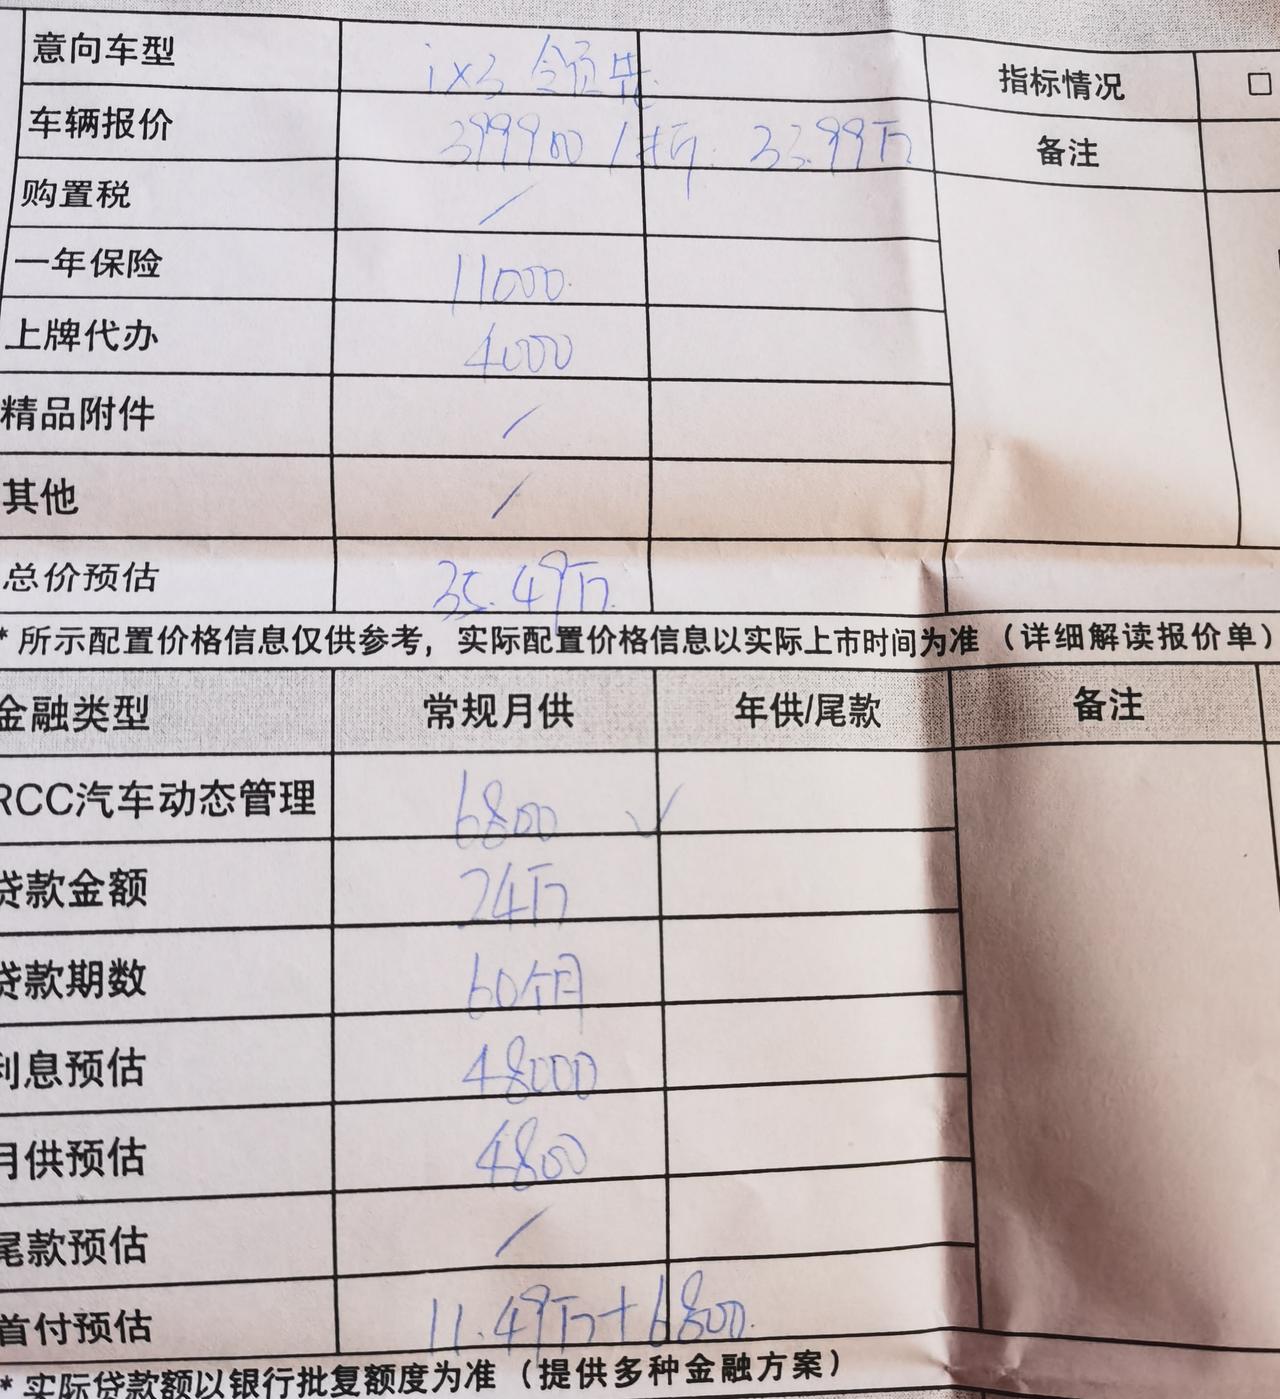 宝马iX3 深圳地区这个报价，咋砍，一个GPS价格就到了6800，望来支招